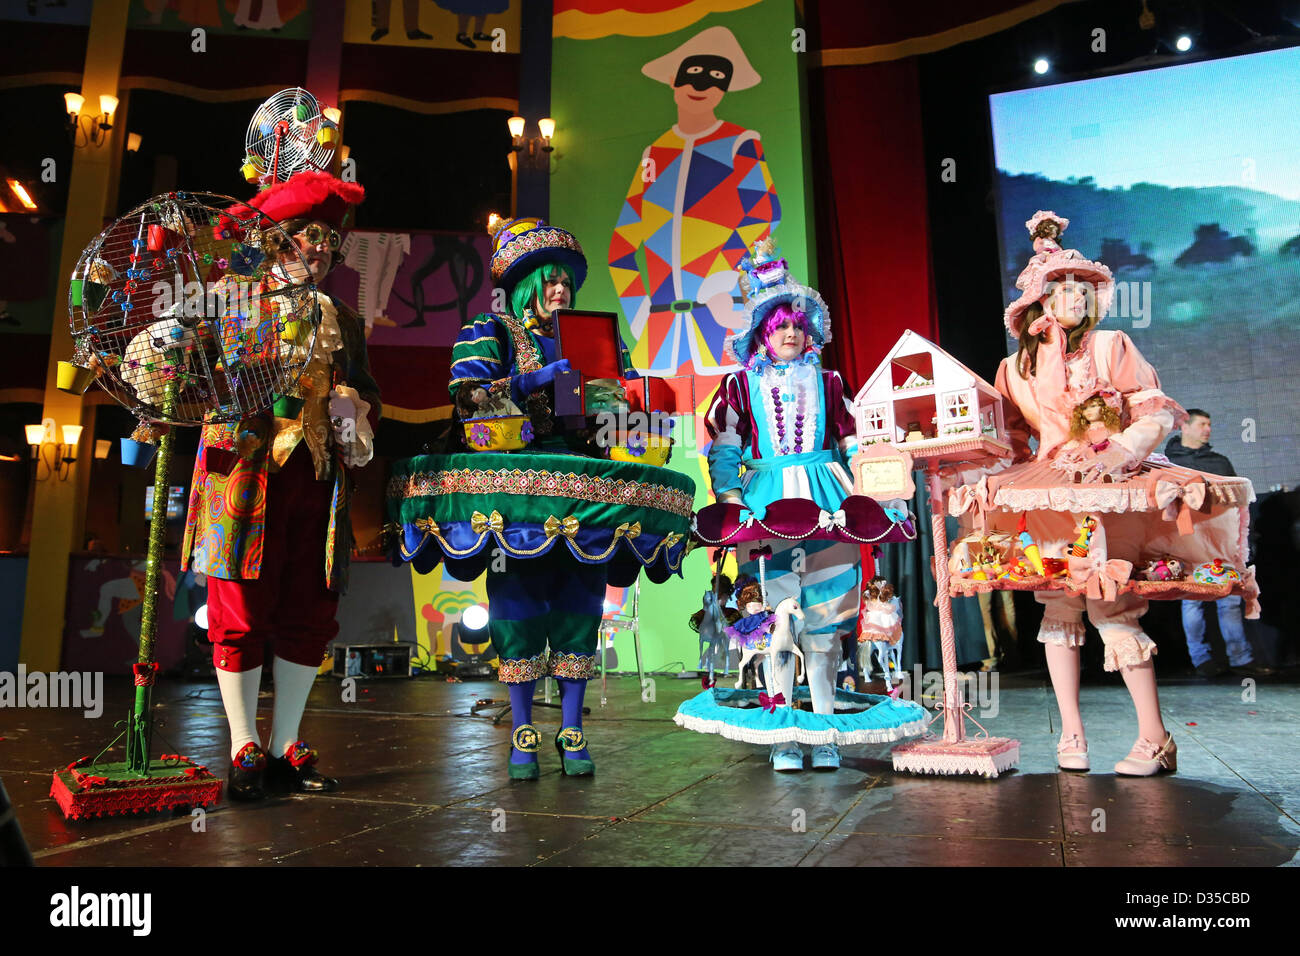 Venise, Italie. 10 février 2013. Luna Park, porteur de la carnaval de Venise 2013 gagner le prix pour la plus pittoresque costume, Venise, Italie. Banque D'Images